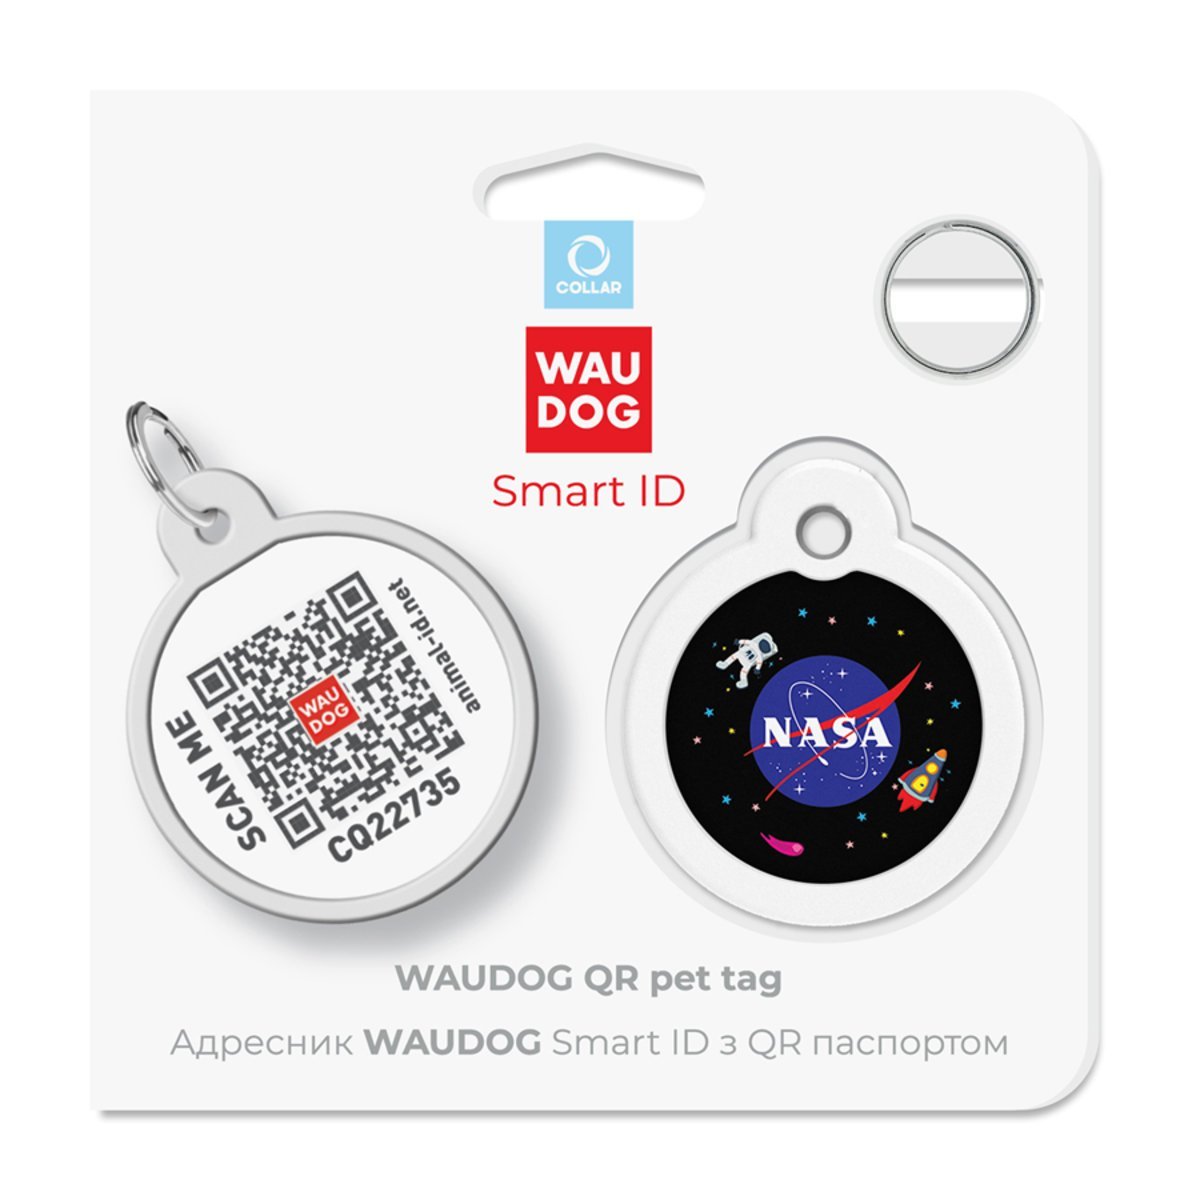 Адресник для собак и кошек Waudog Smart ID с QR паспортом, NASA, M, диаметр 30 мм - фото 5